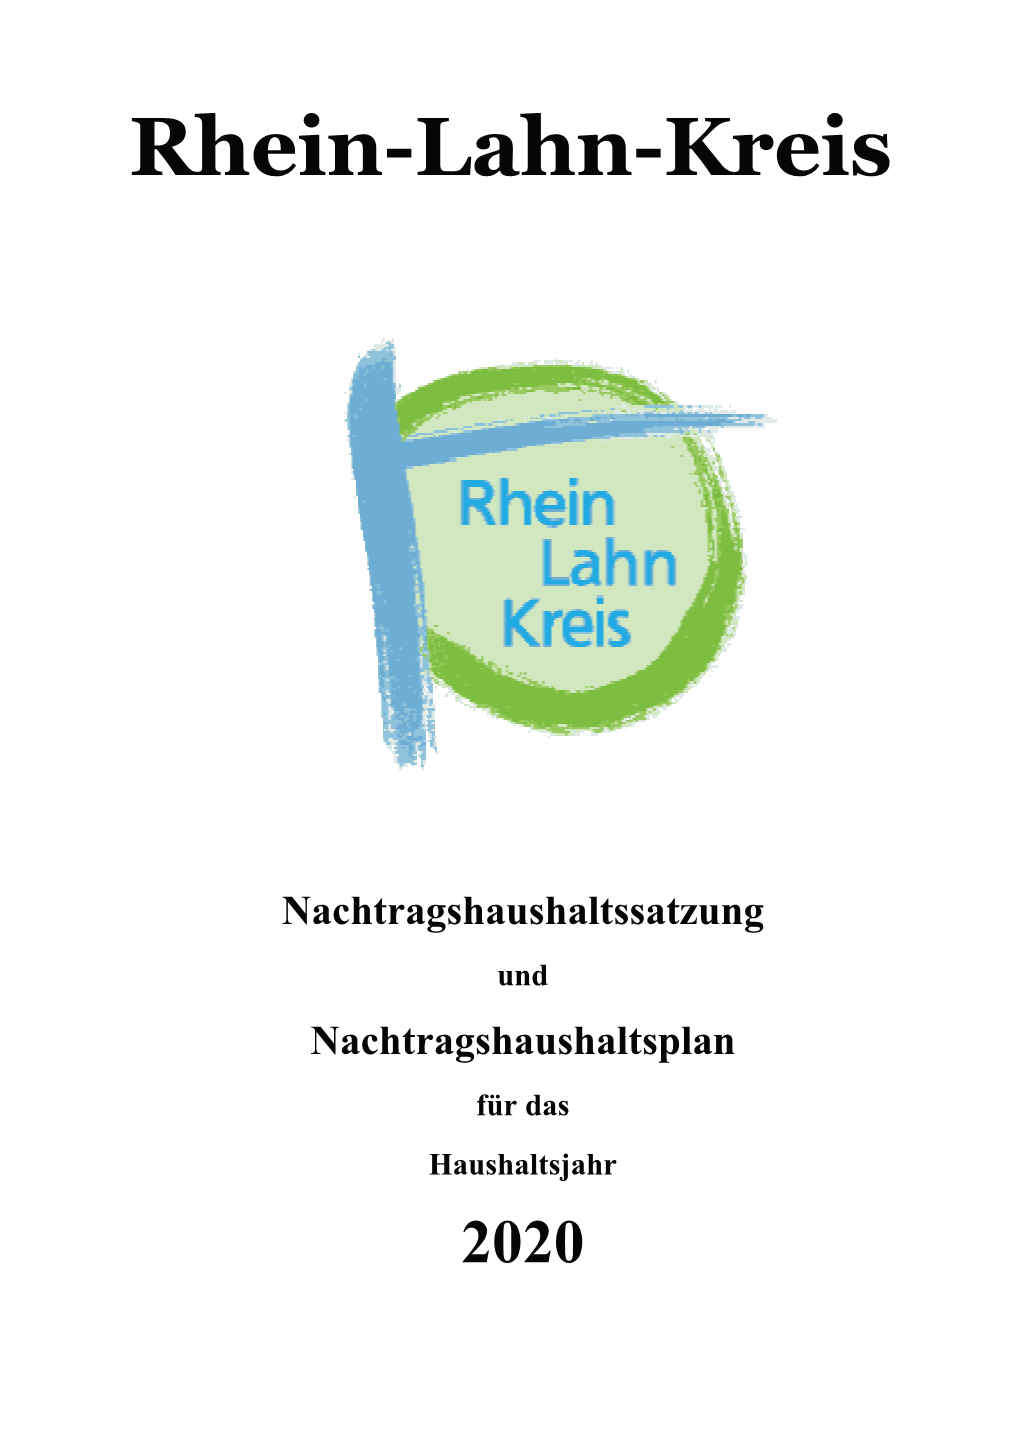 Nachtragshaushaltsplan Des Rhein-Lahn-Kreises Für Das Haushaltsjahr 2020